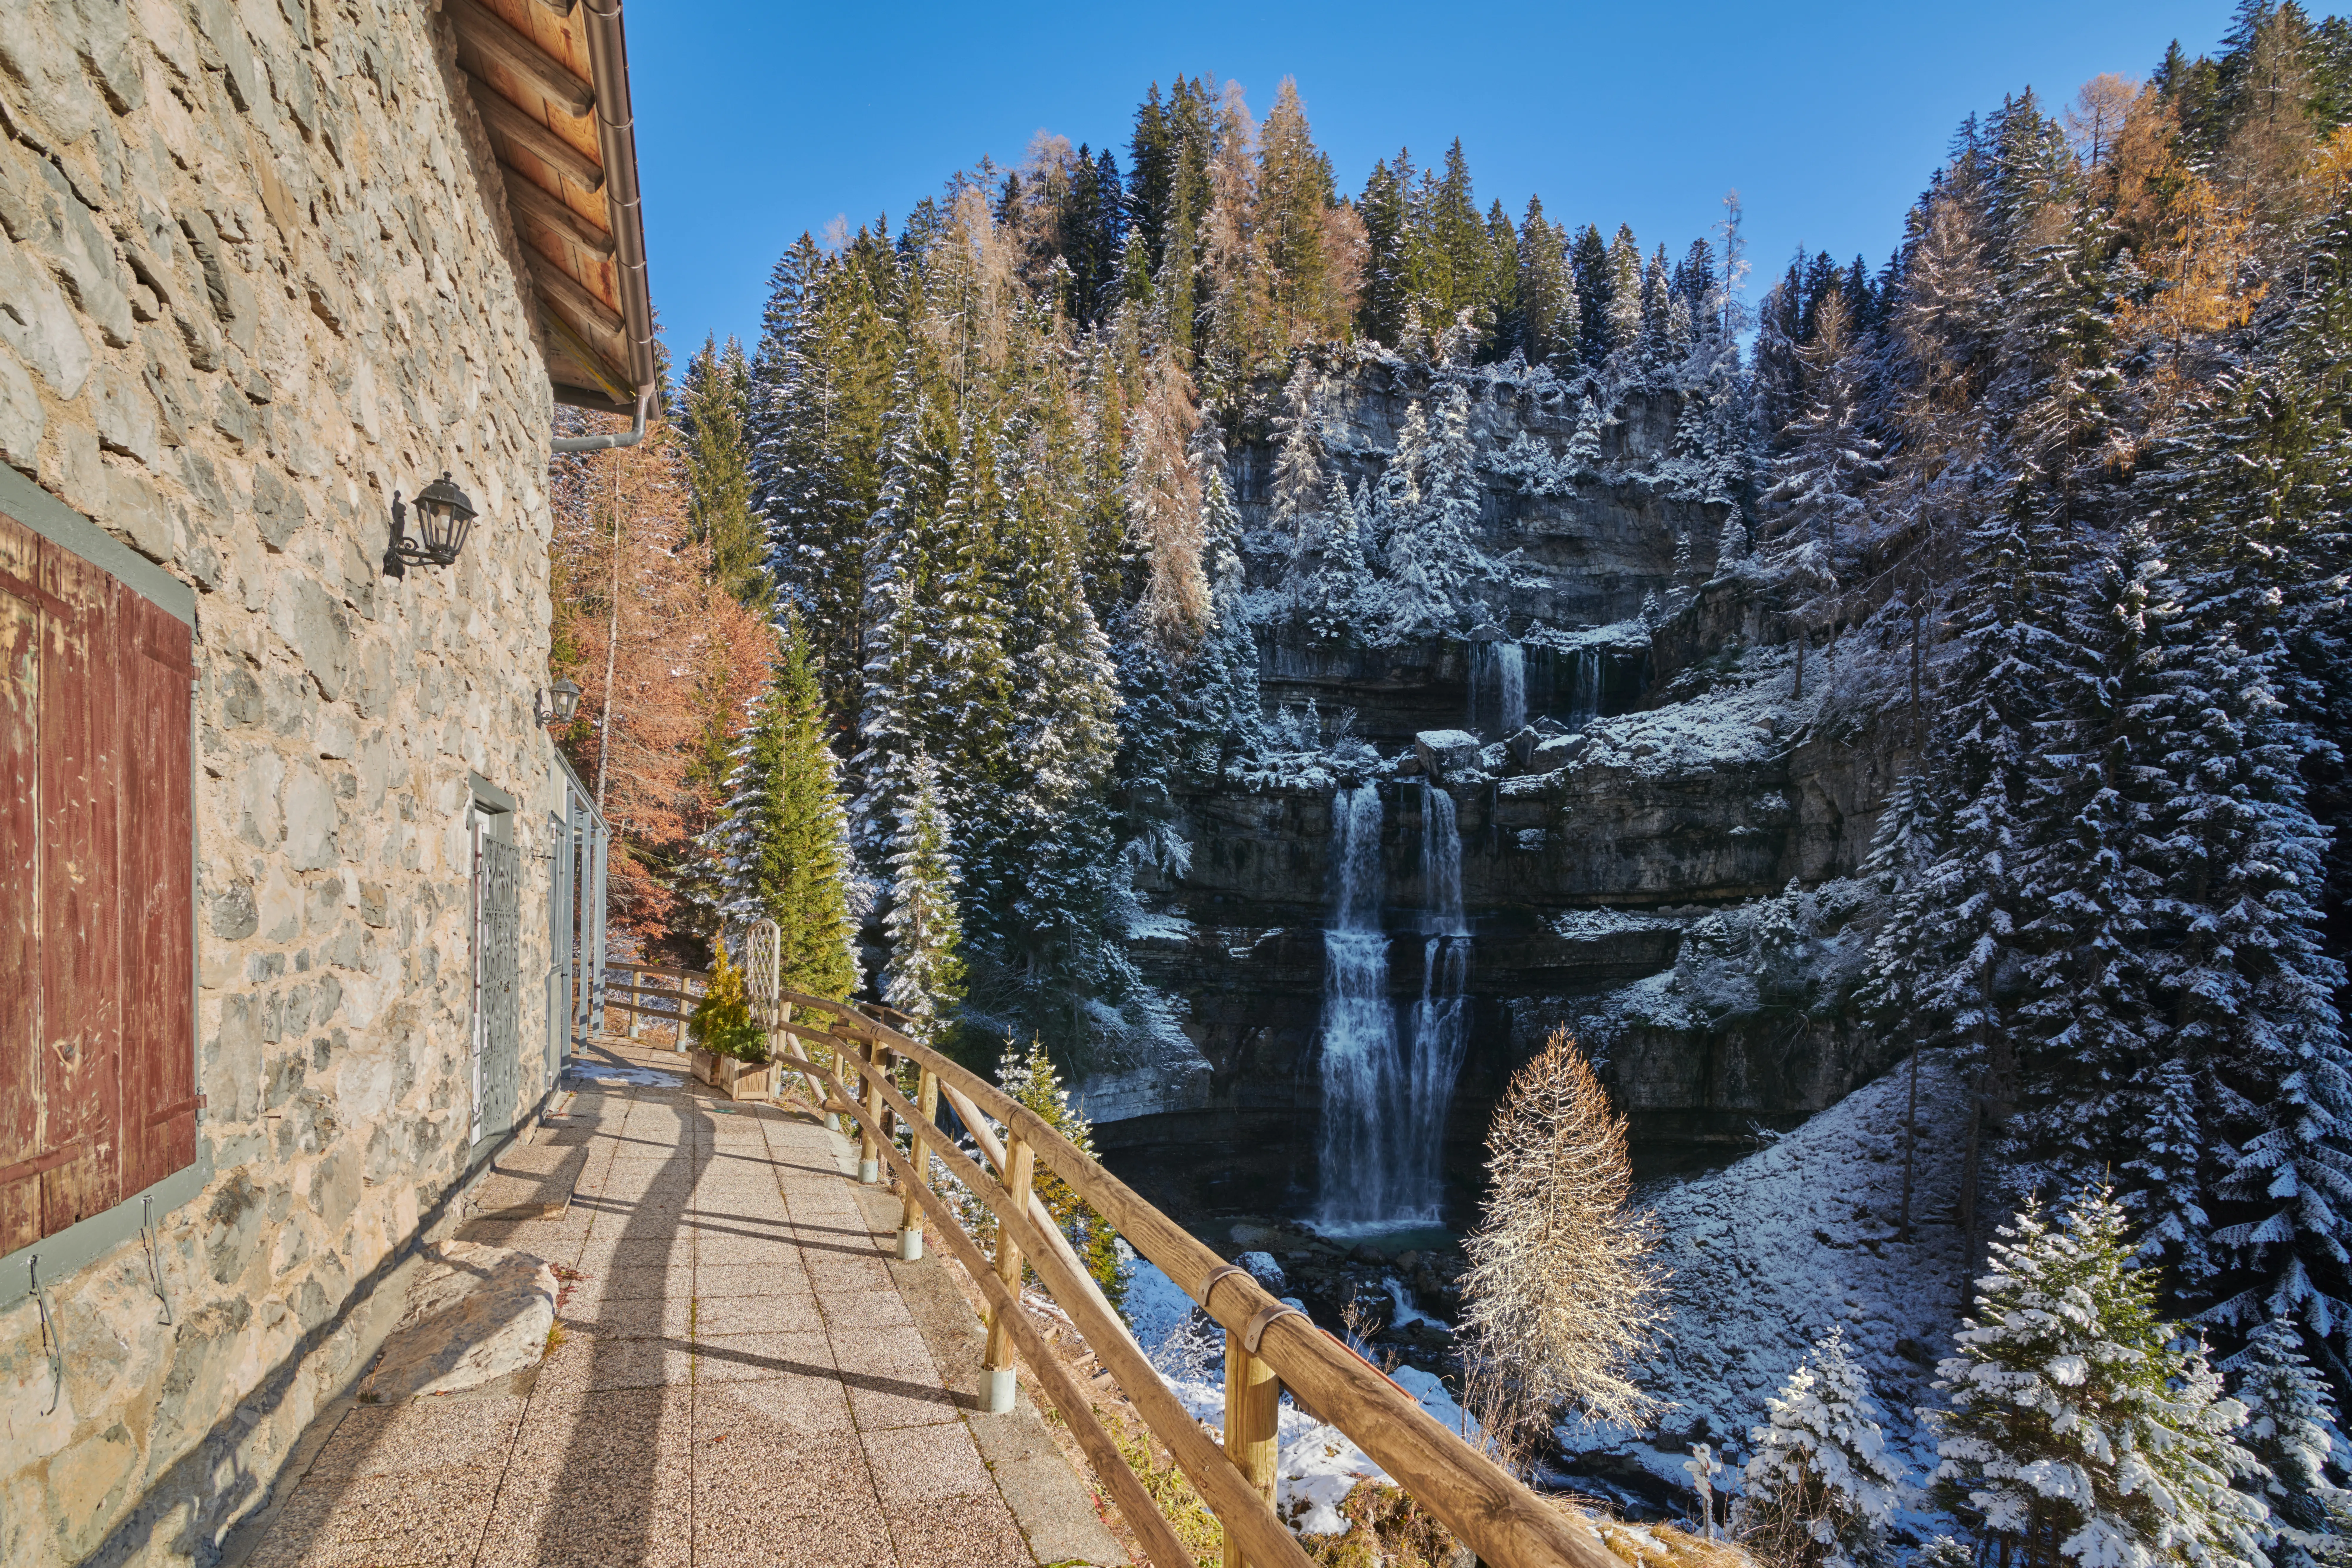 Bella cascata Vallesinella a Madonna di Campiglio in autunno, Parco Nazionale Adamello-Brenta, Trentino, Italia Dolomiti